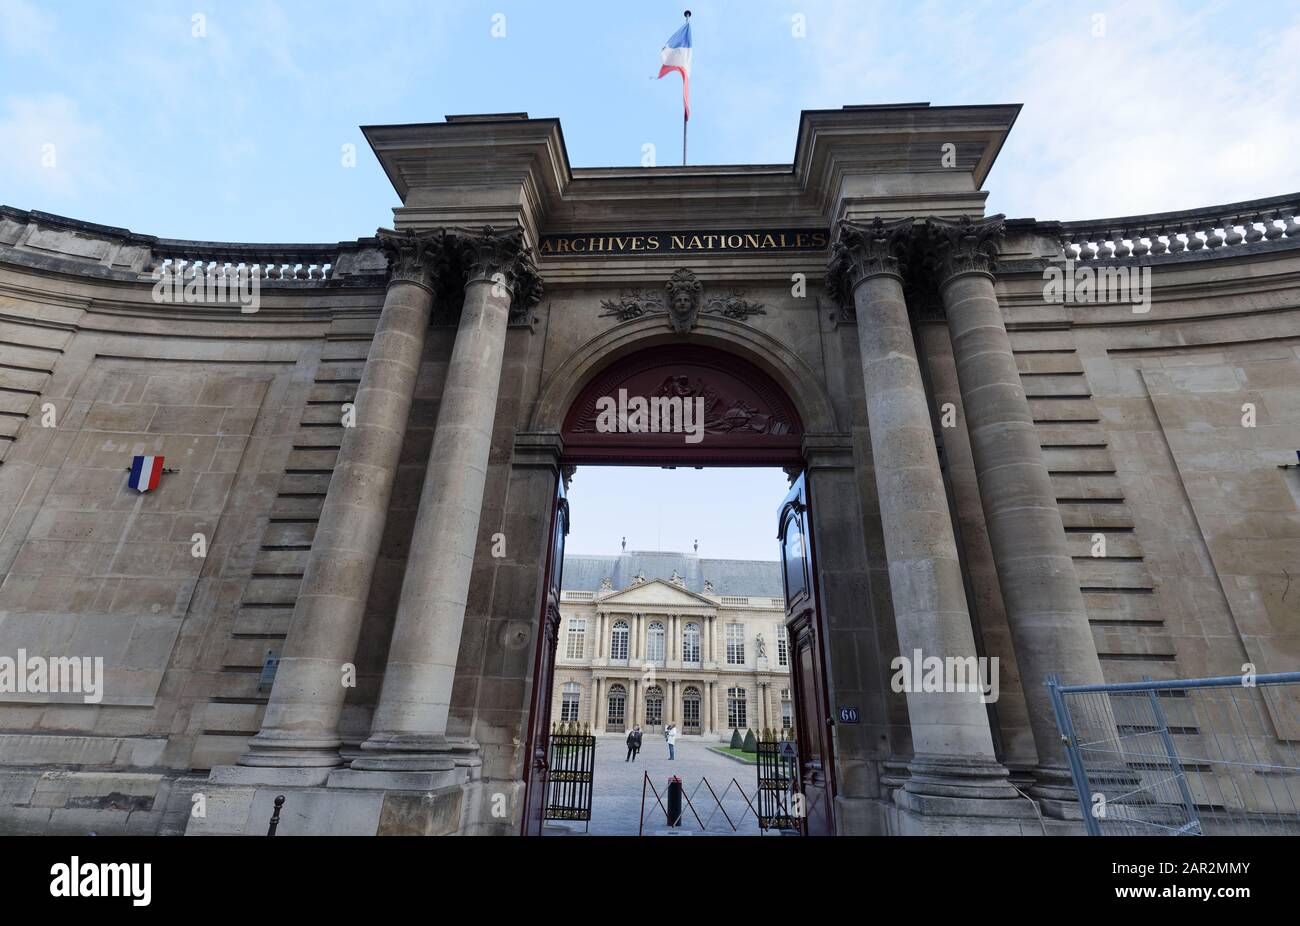 Vue sur l'entrée des Archives nationales dans le quartier du Marais à Paris, France Banque D'Images